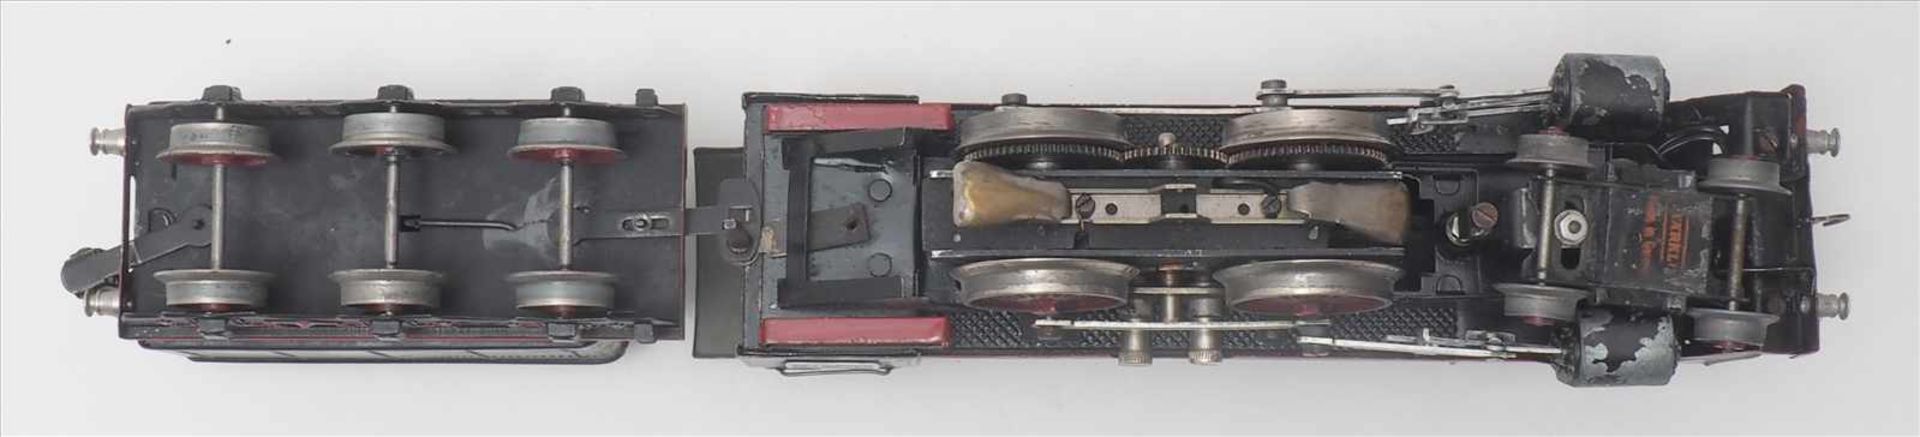 Märklin DampflokSpur 0, 1930-er Jahre. Elektroantrieb. Achsfolge 2B. E70/12920 Dampflokomotive mit - Bild 5 aus 9